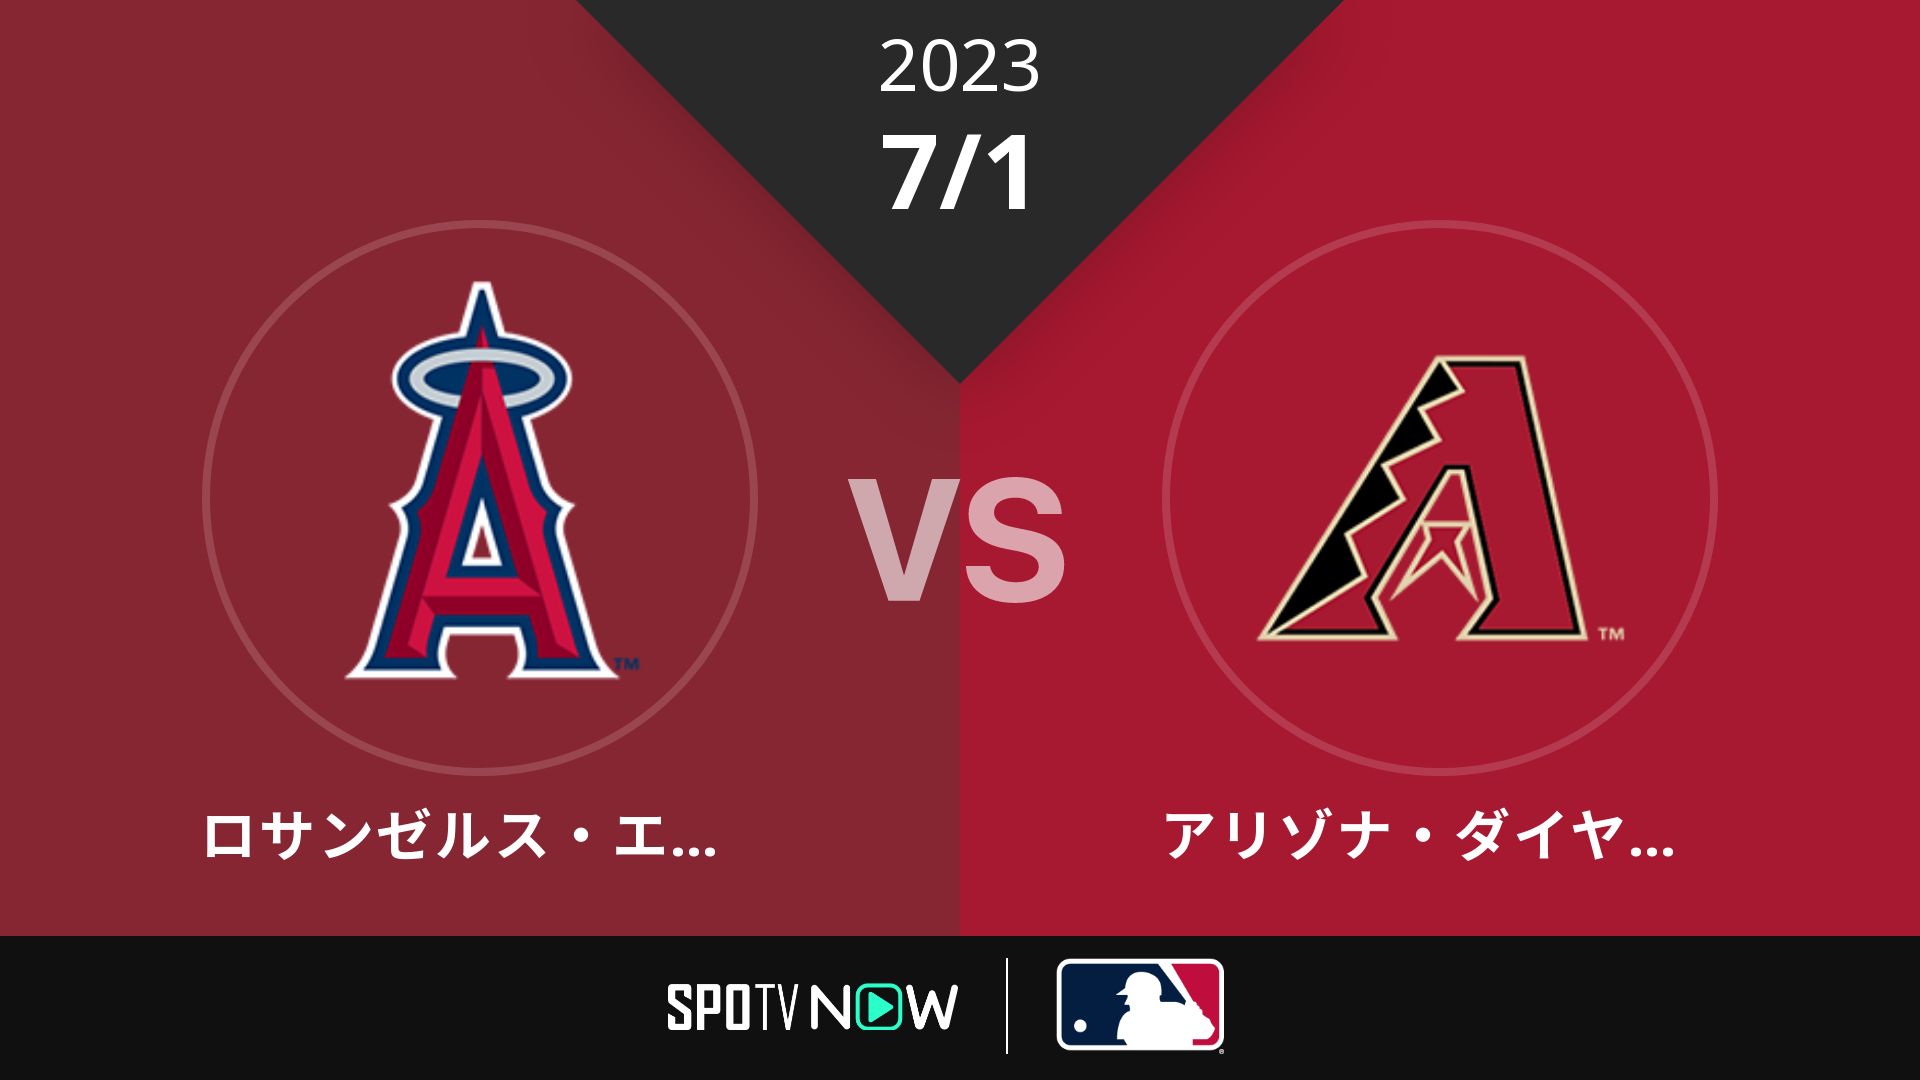 2023/7/1 エンゼルス vs Dバックス [MLB]